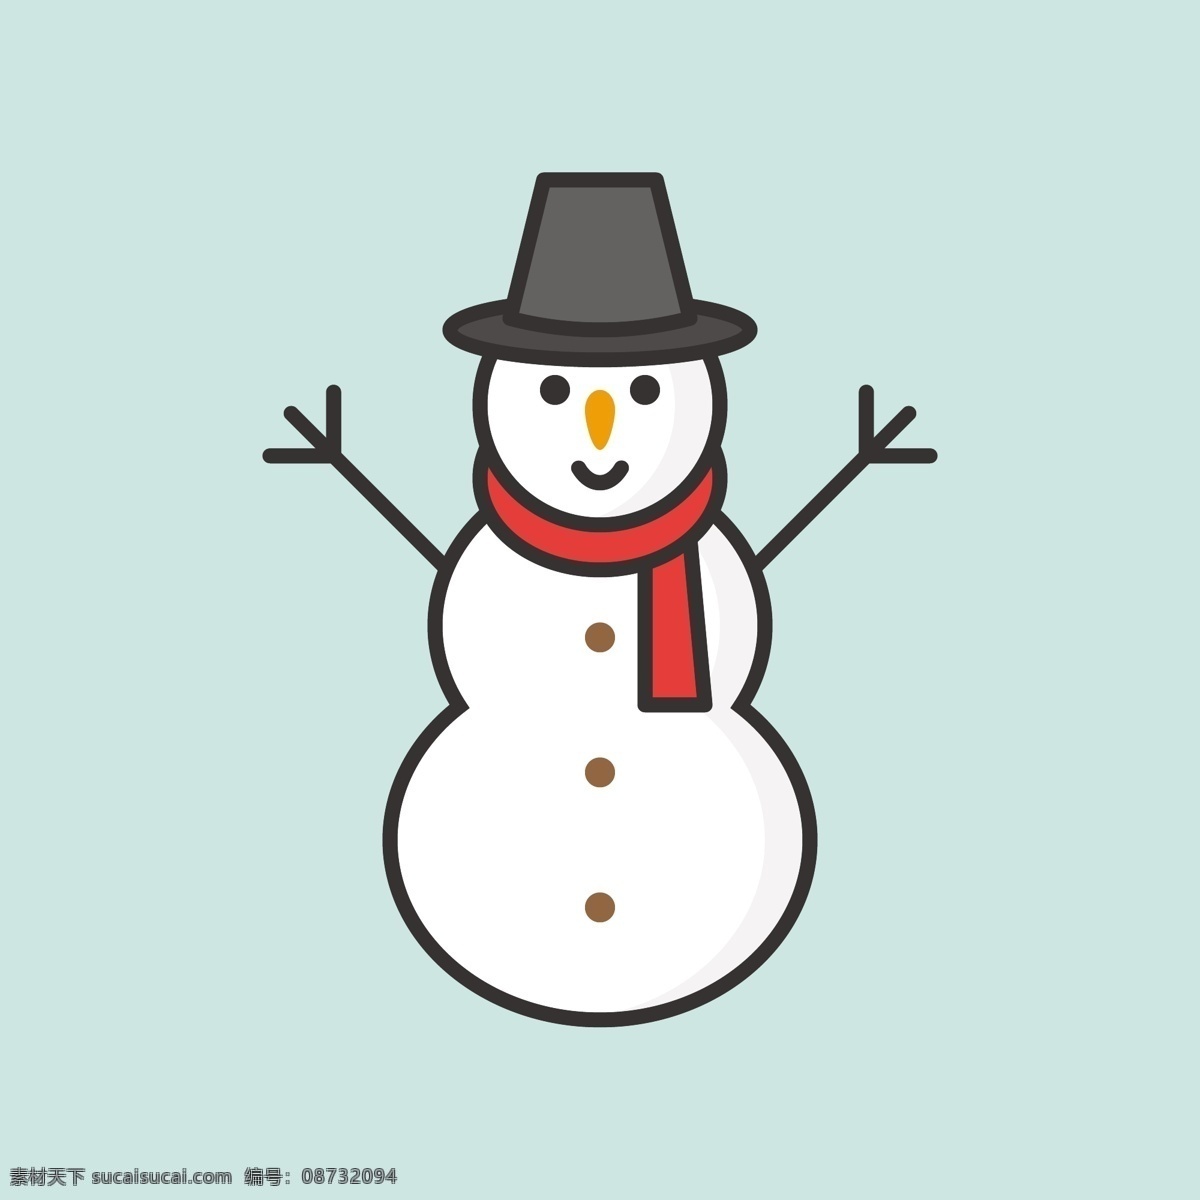 卡通雪人 雪人 圣诞雪人 手绘 可爱 冬天素材 圣诞节 卡通设计